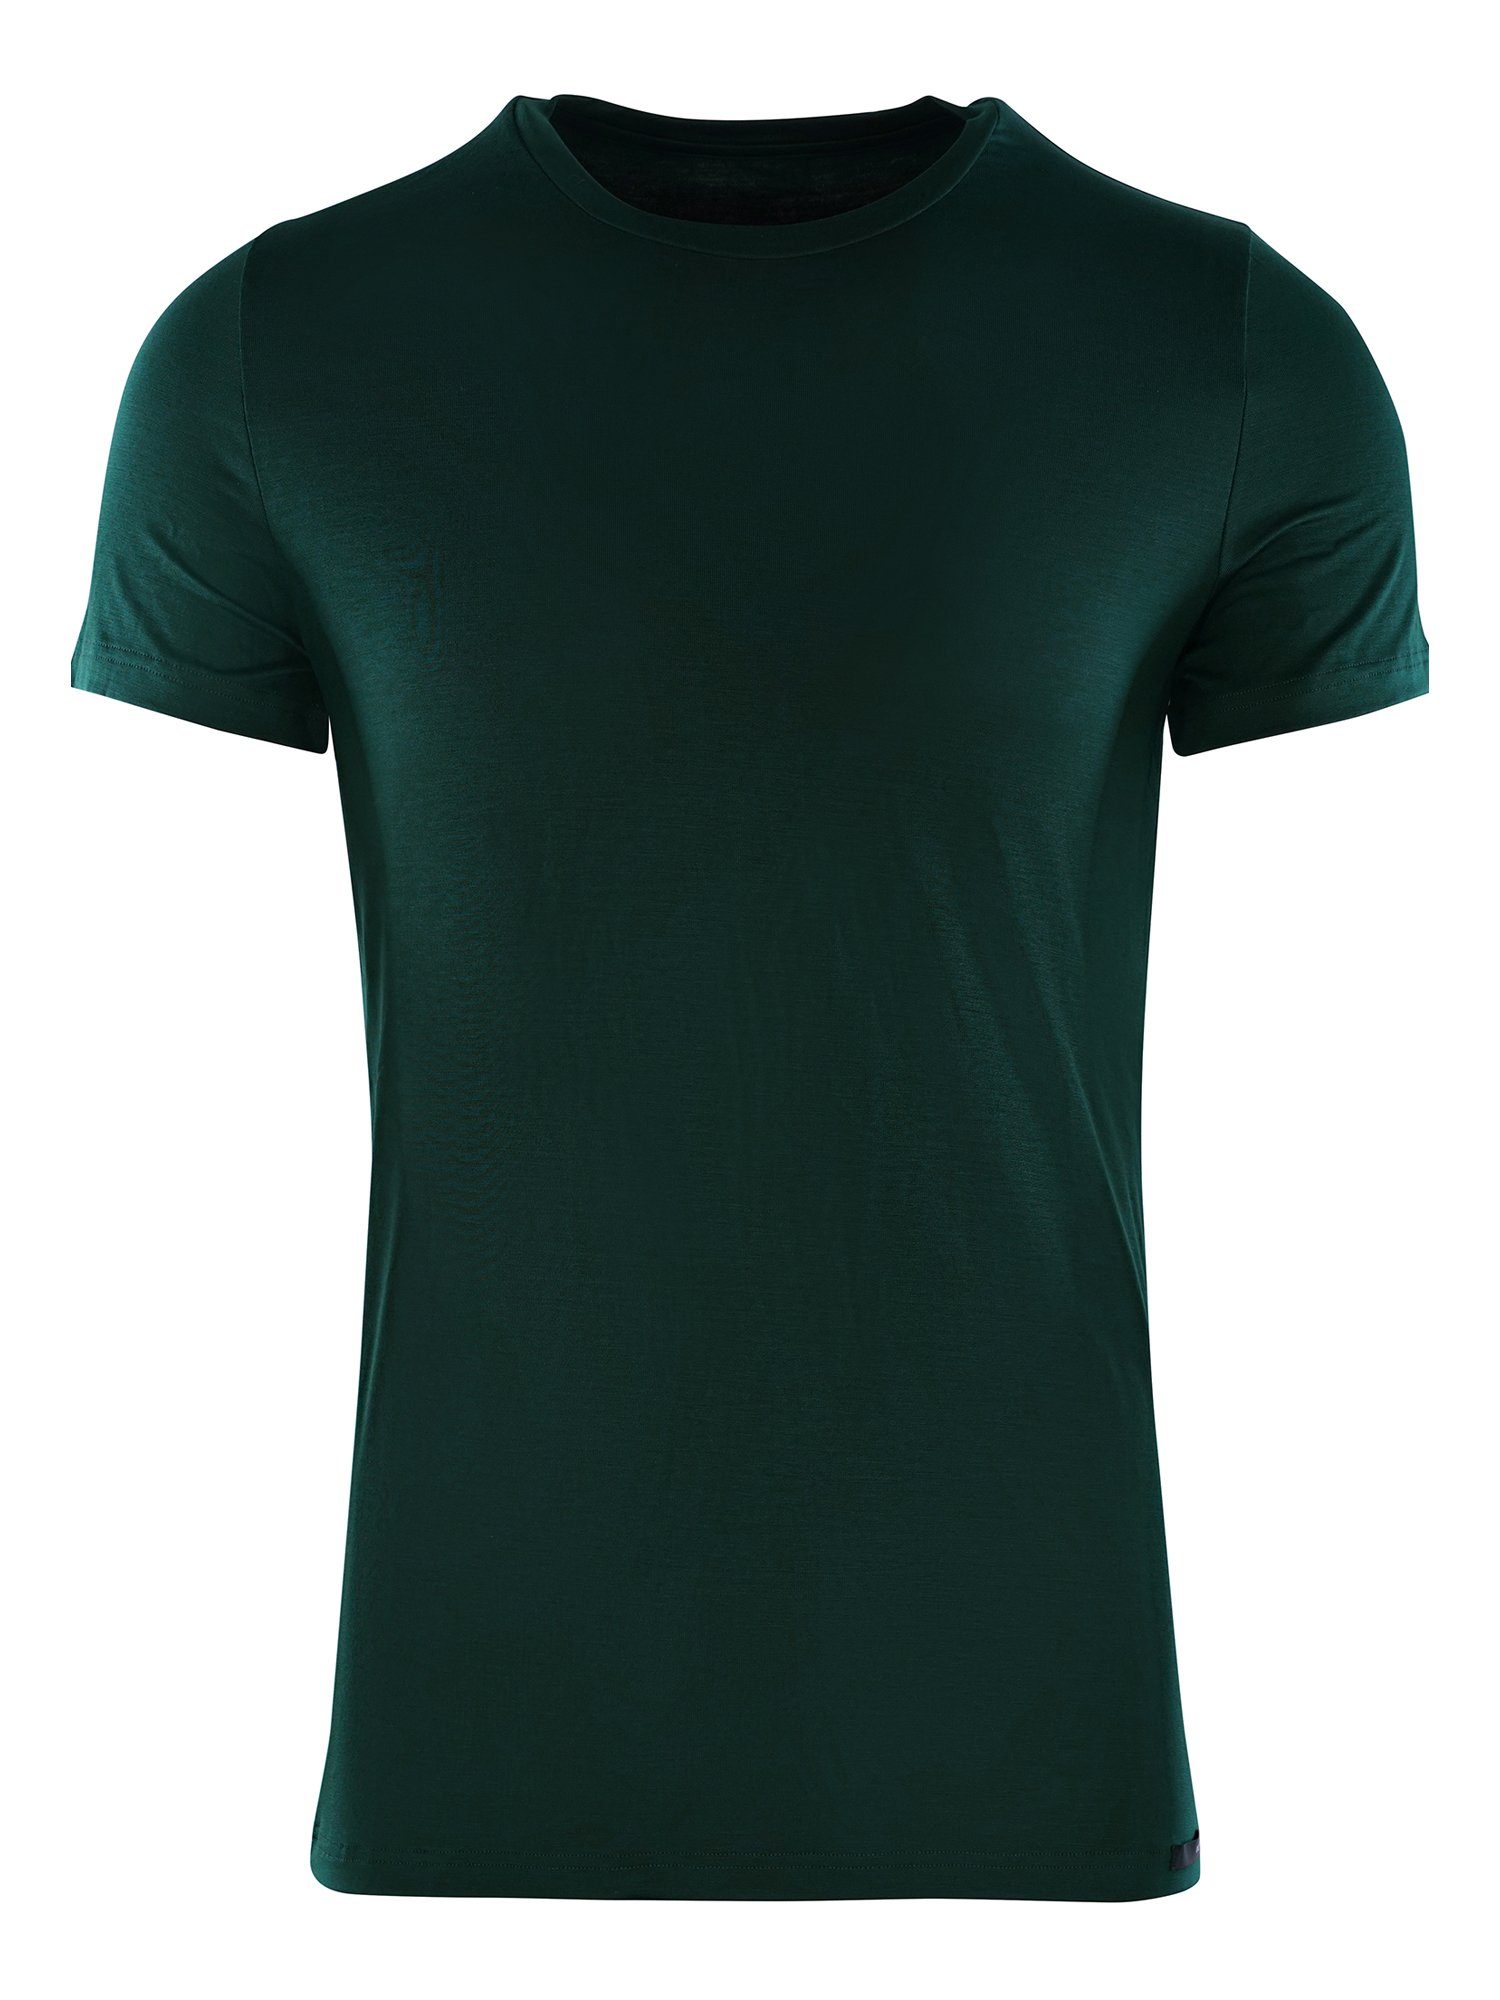 Hom T-Shirt Tencel Soft T-Shirt unterziehshirt unterhemd